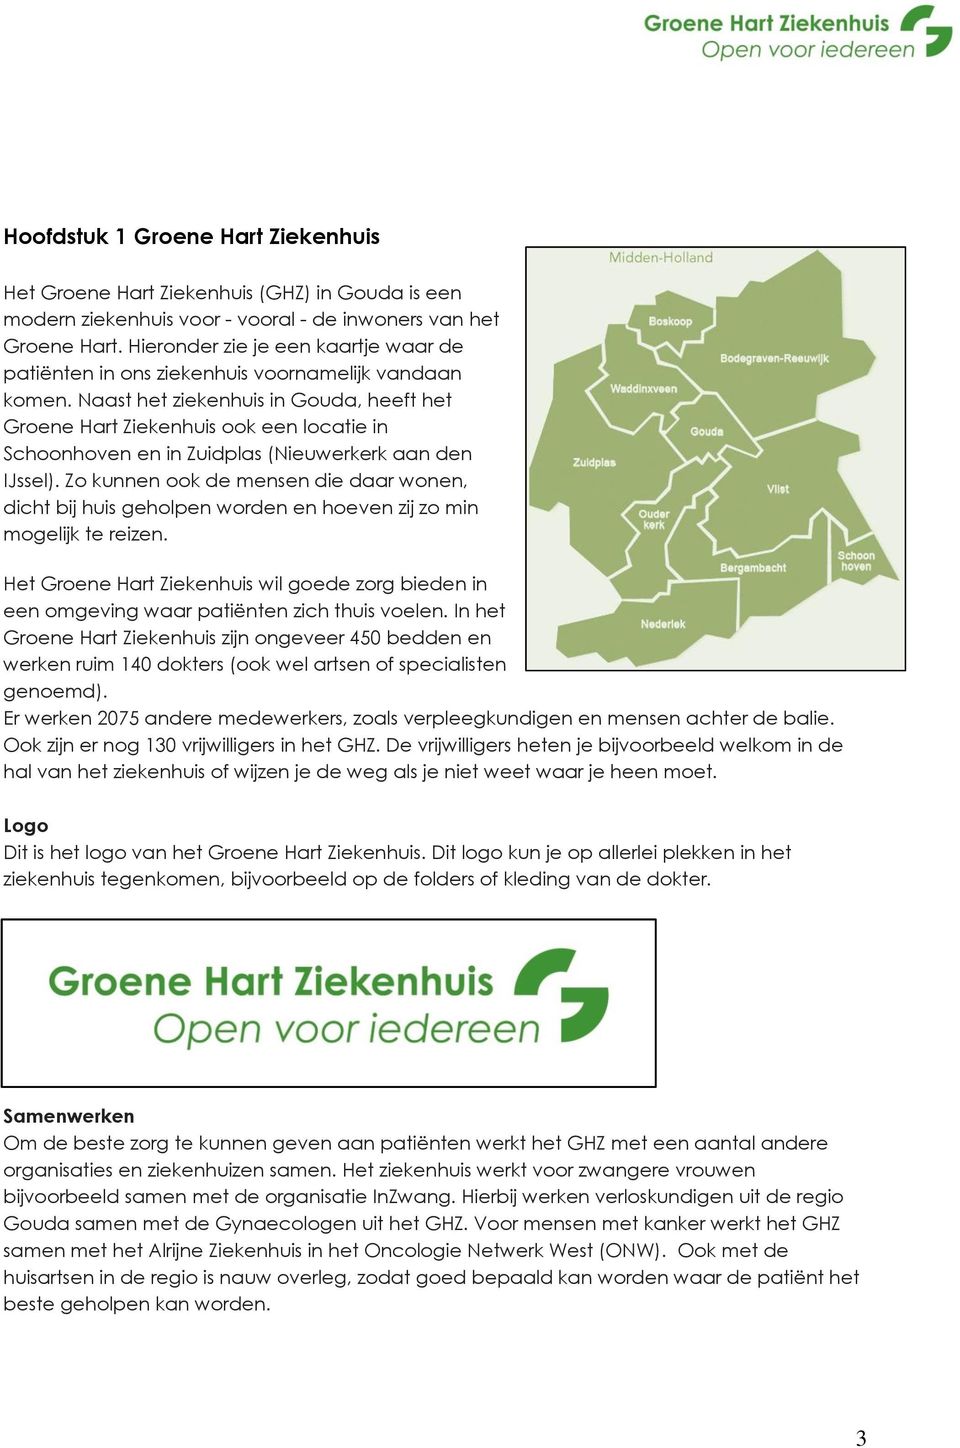 Naast het ziekenhuis in Gouda, heeft het Groene Hart Ziekenhuis ook een locatie in Schoonhoven en in Zuidplas (Nieuwerkerk aan den IJssel).